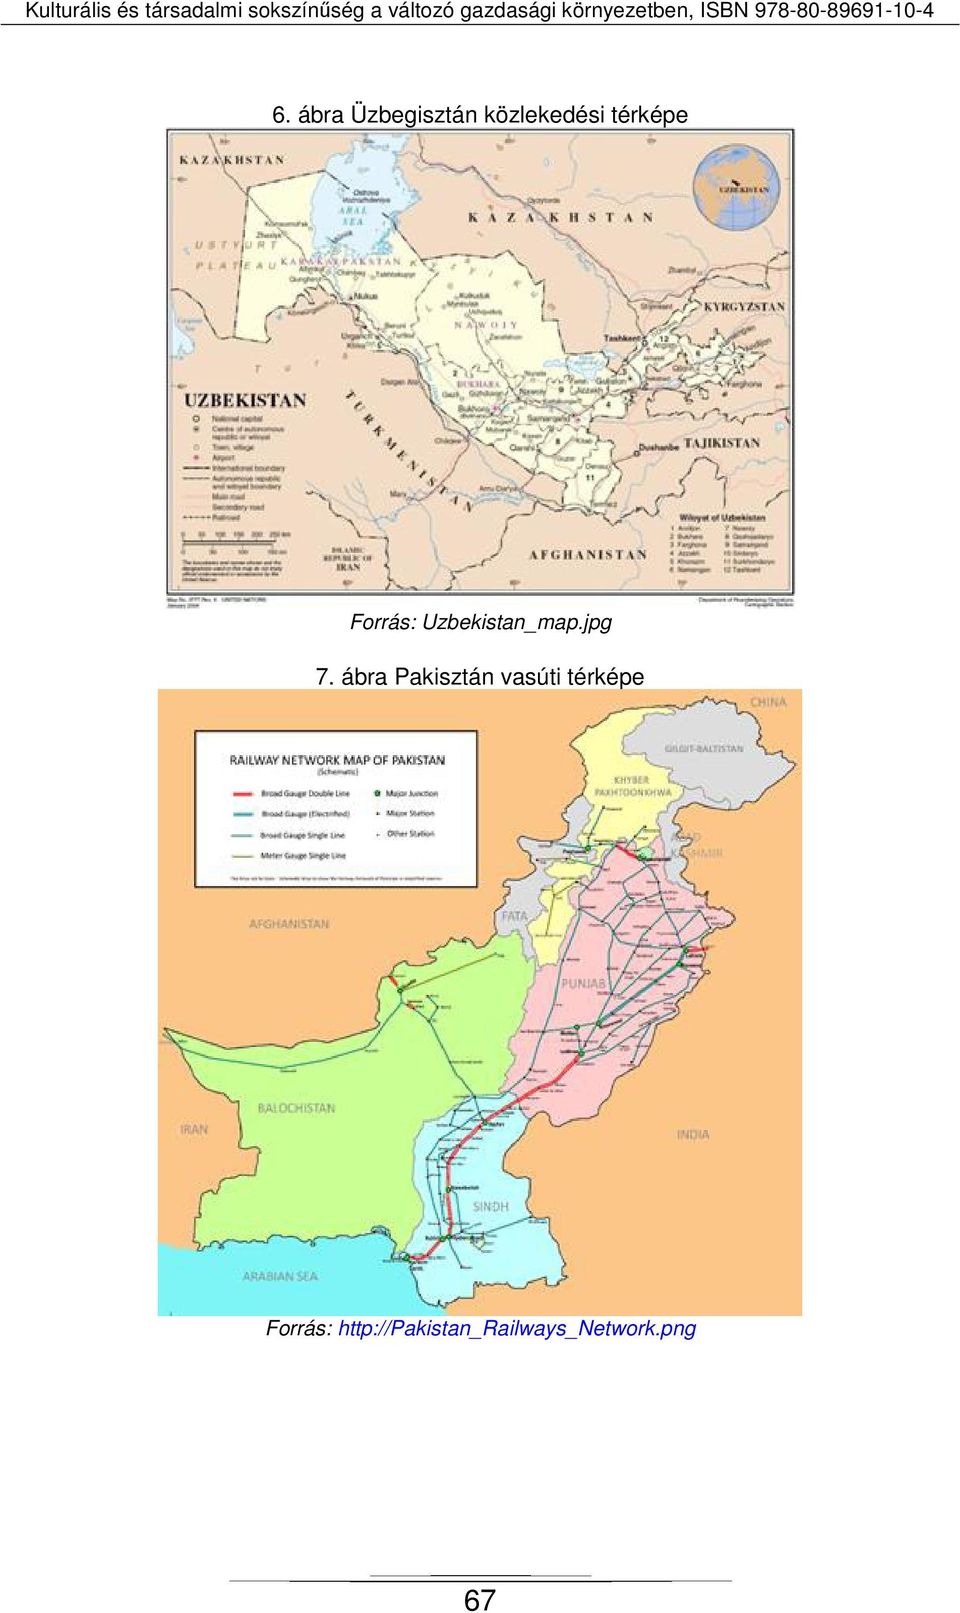 ábra Pakisztán vasúti térképe